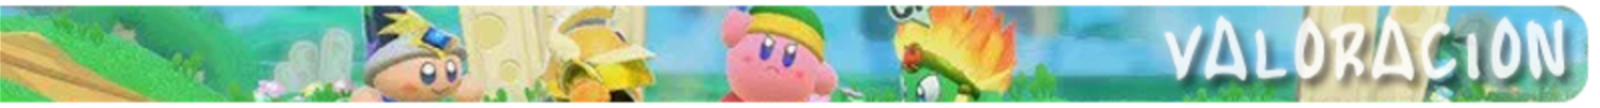 Análisis de Kirby Star Allies - Una aventura en compañía